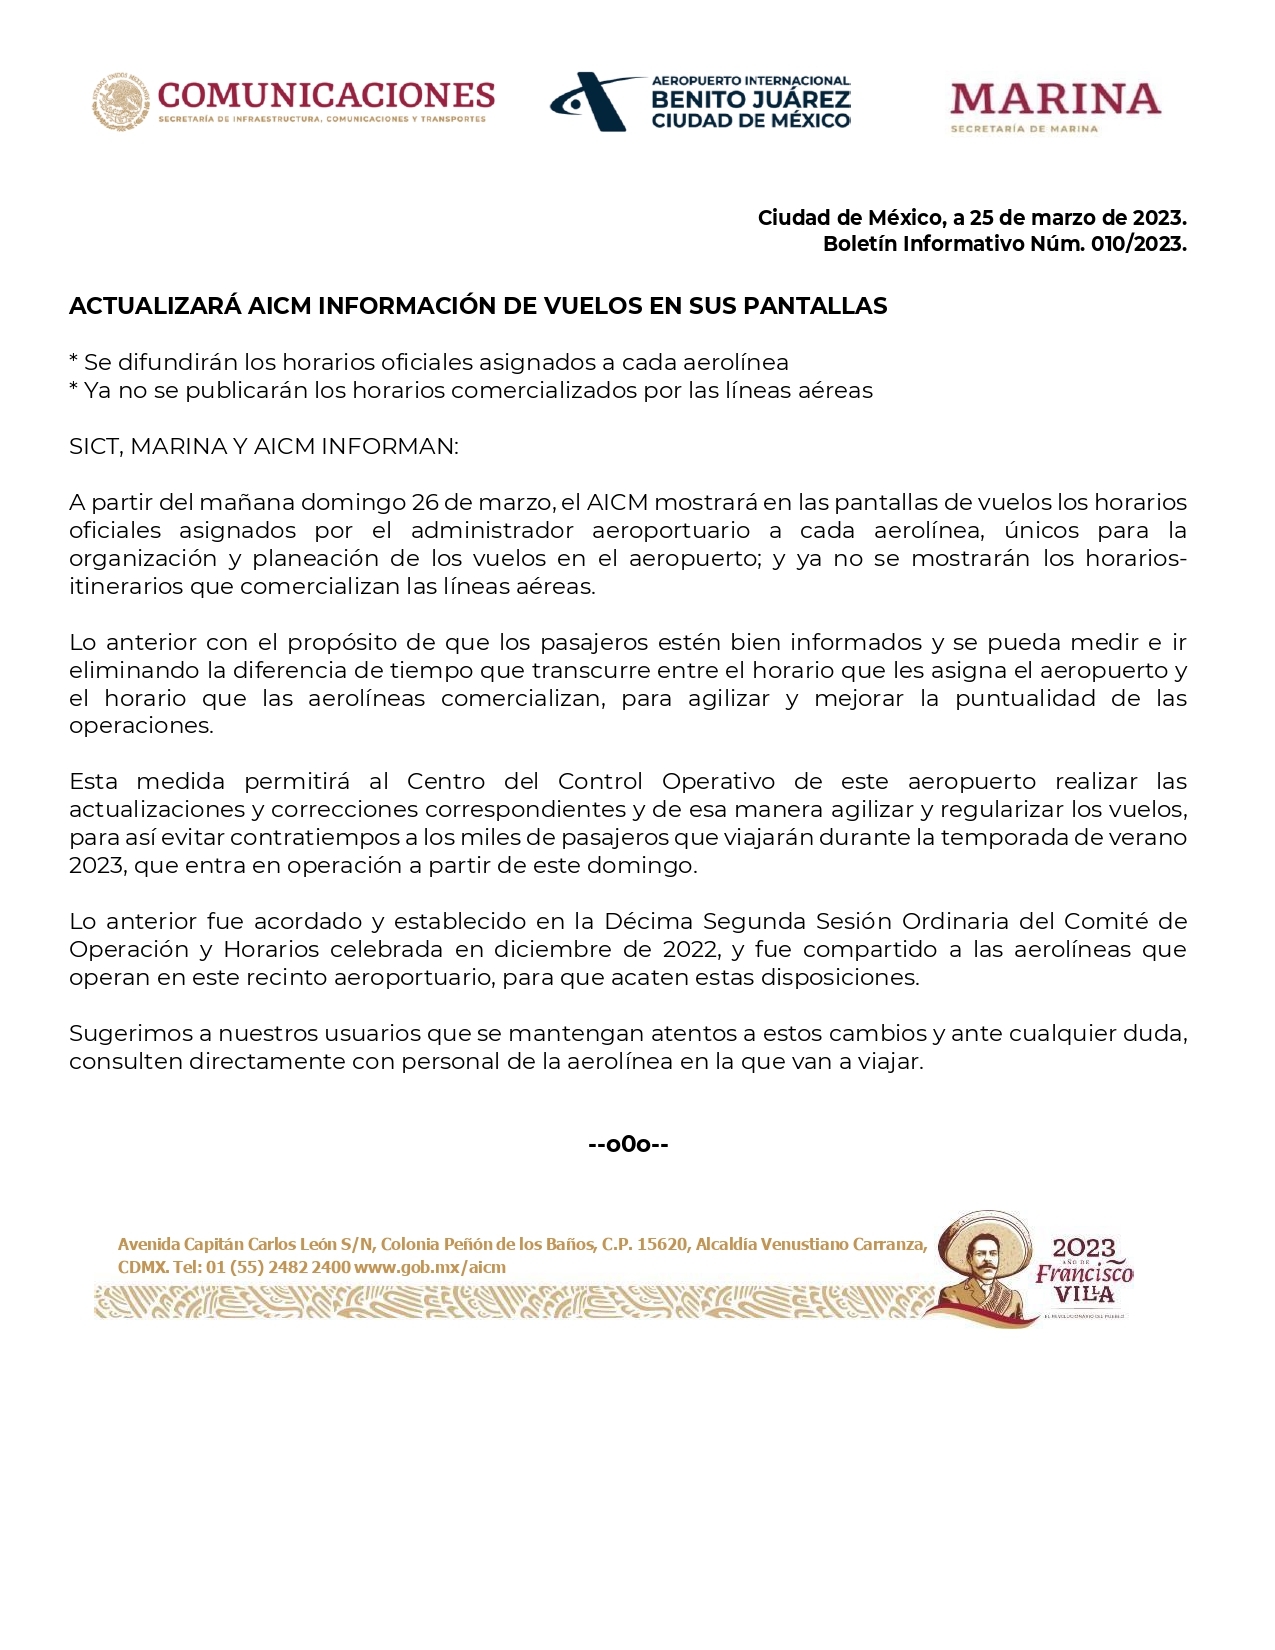 AICM statement 